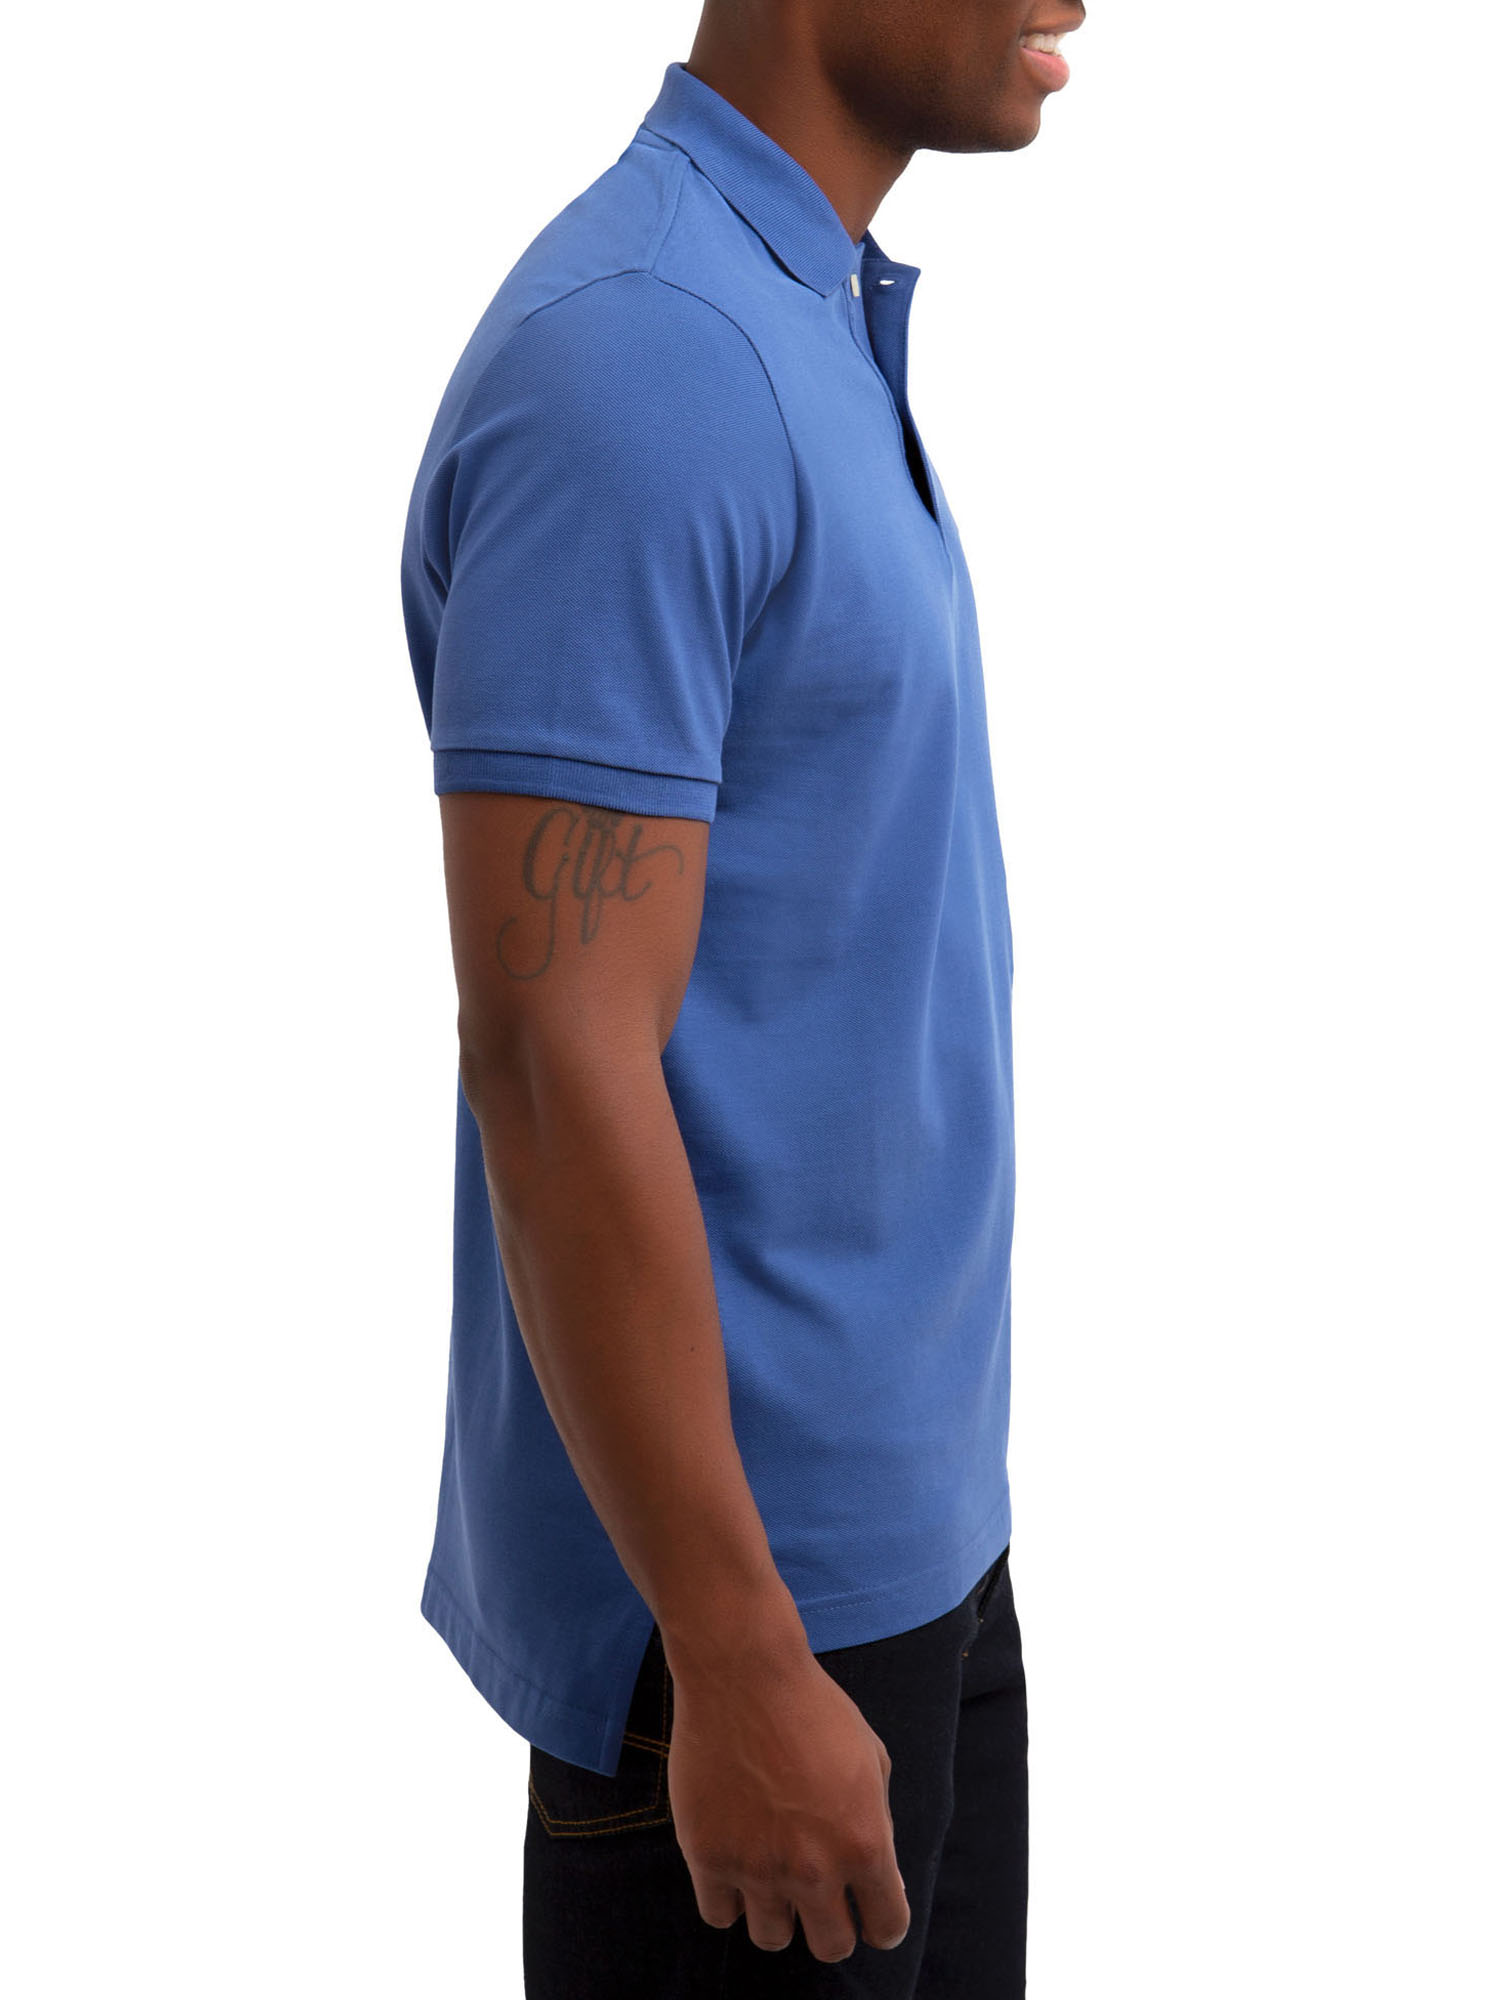 U.S. Polo Assn. Men's Pique Polo Shirt - image 2 of 3